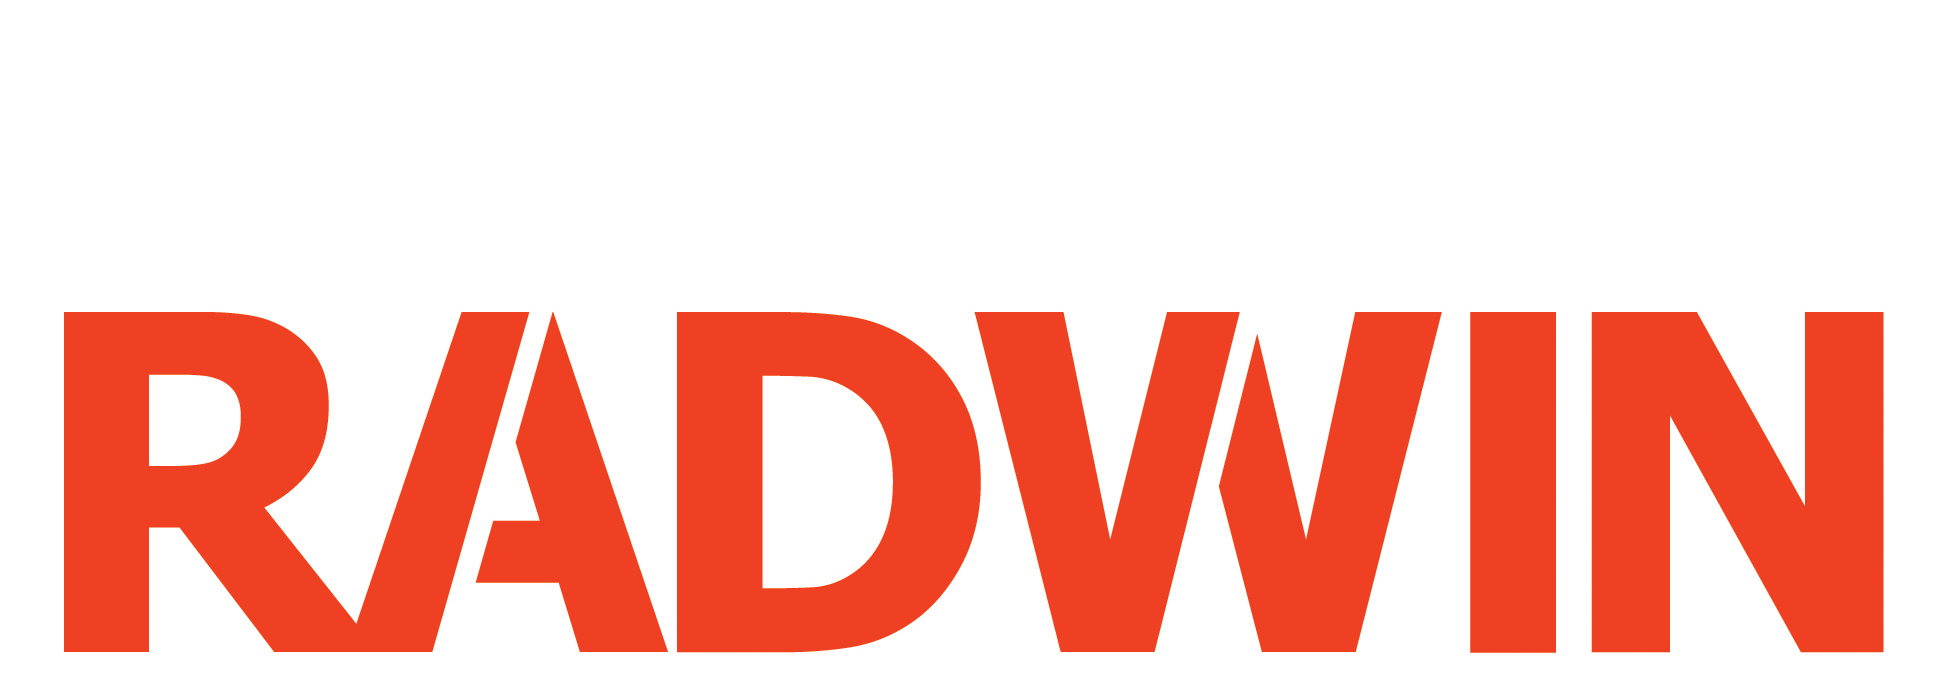 RADWIN-logo